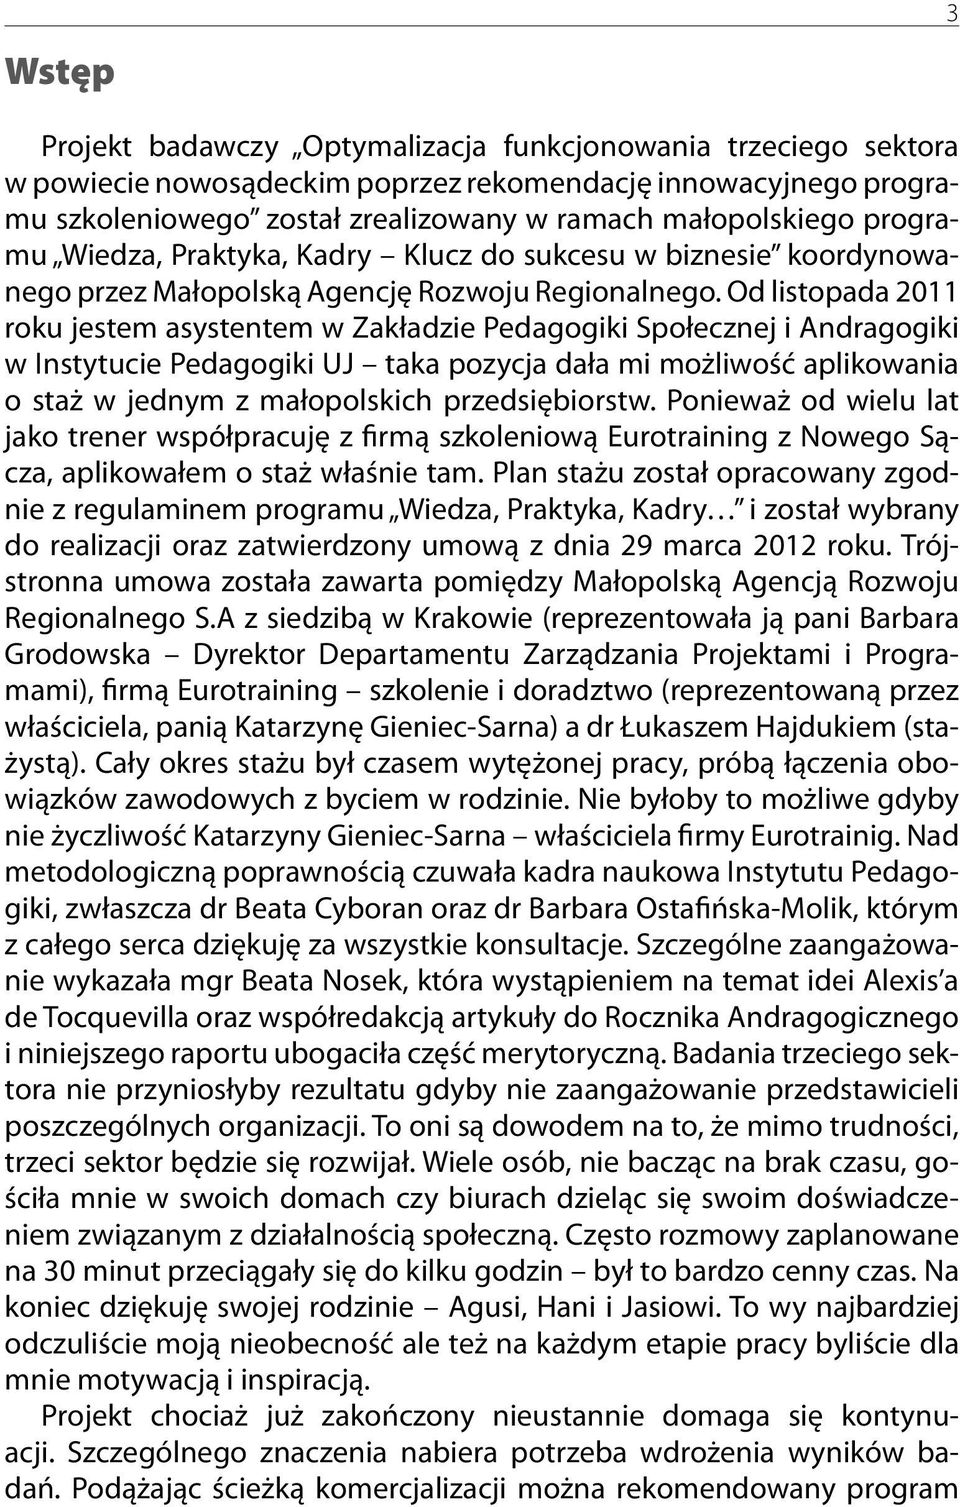 Od listopada 2011 roku jestem asystentem w Zakładzie Pedagogiki Społecznej i Andragogiki w Instytucie Pedagogiki UJ taka pozycja dała mi możliwość aplikowania o staż w jednym z małopolskich